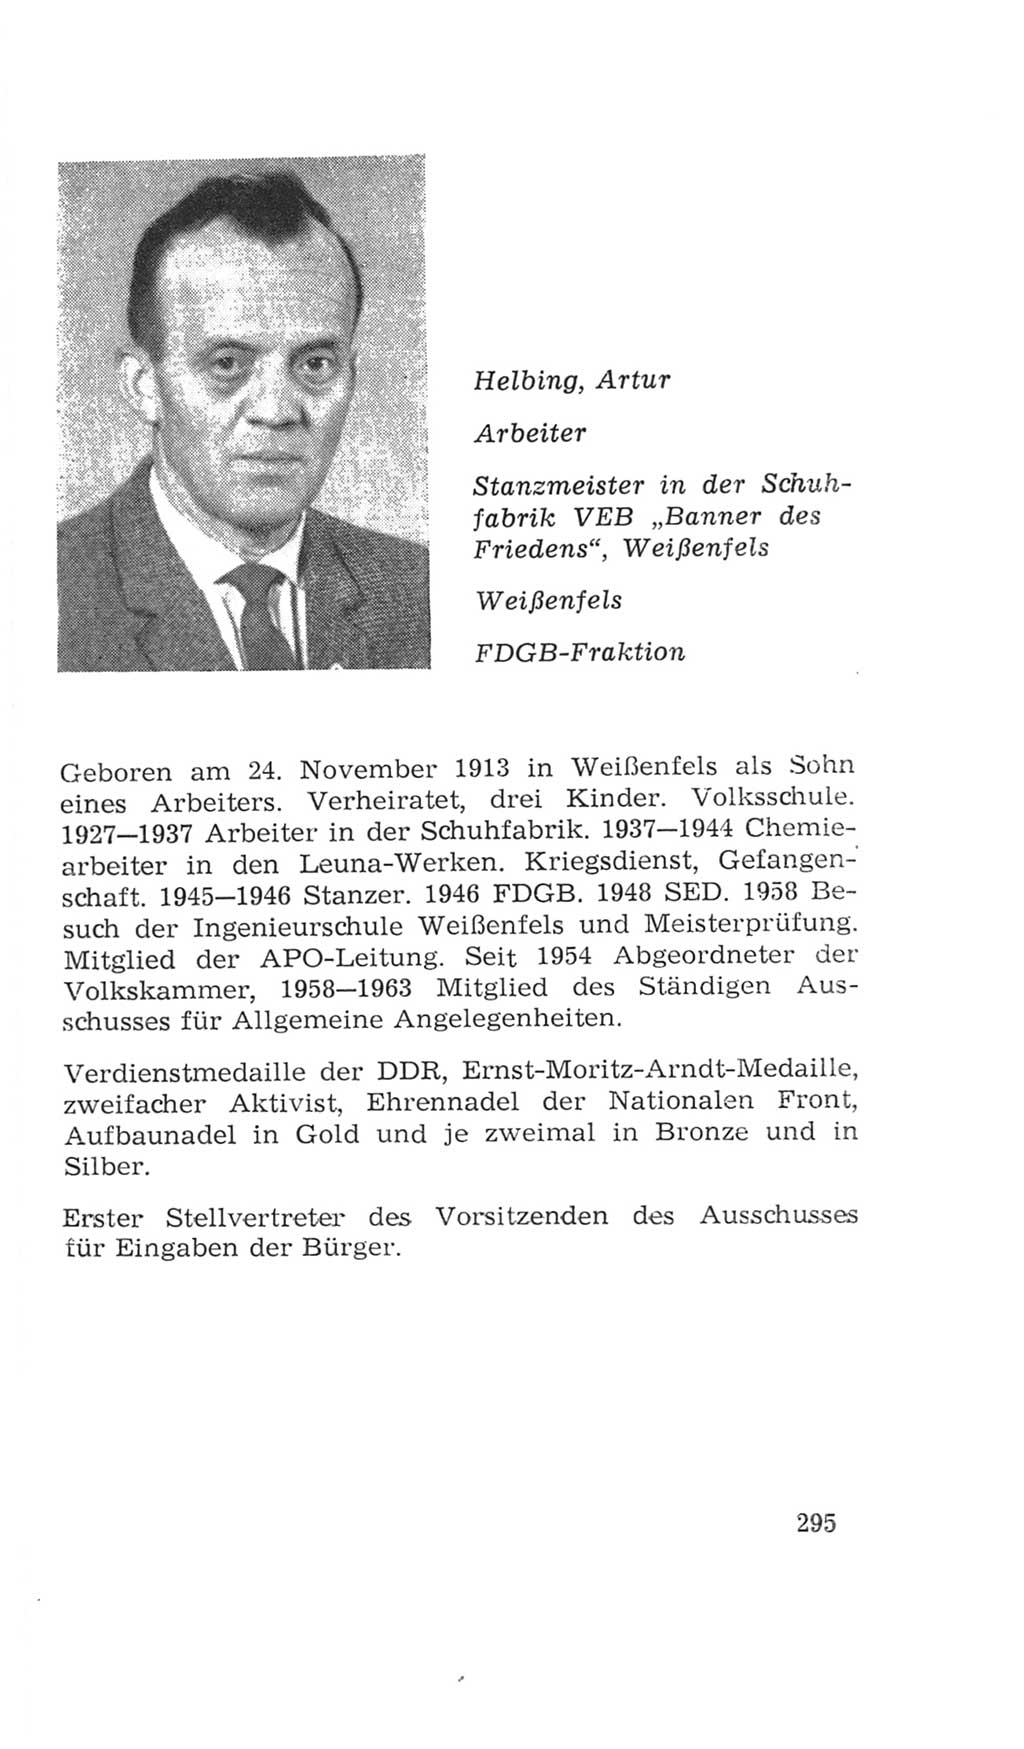 Volkskammer (VK) der Deutschen Demokratischen Republik (DDR), 4. Wahlperiode 1963-1967, Seite 295 (VK. DDR 4. WP. 1963-1967, S. 295)